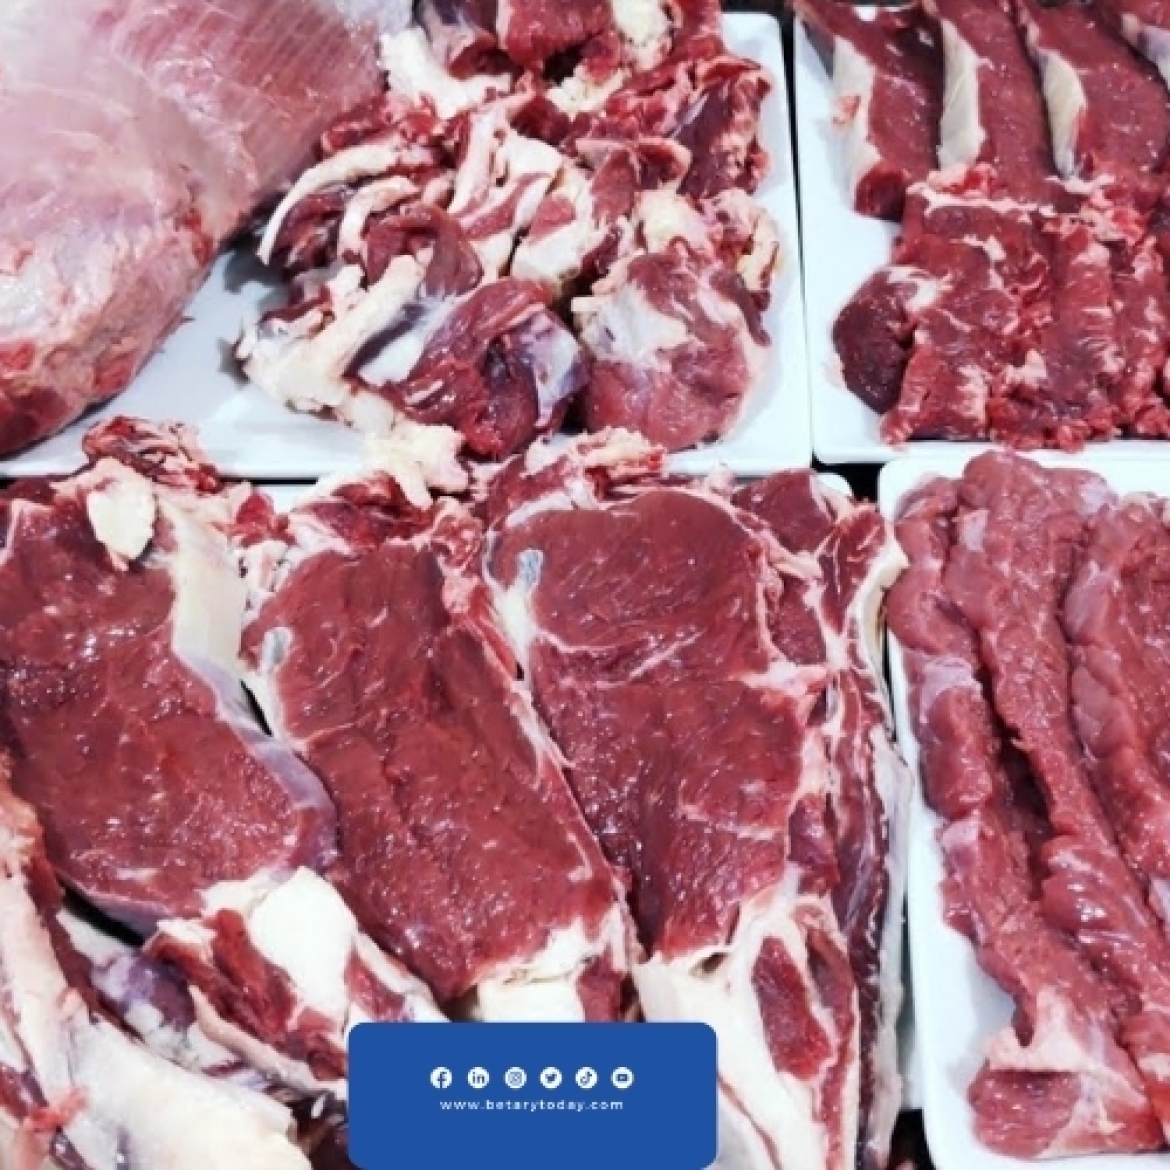 ما مصير أسعار اللحوم الحمراء بعد الإفراجات الجمركية التي تمت عن الماشية